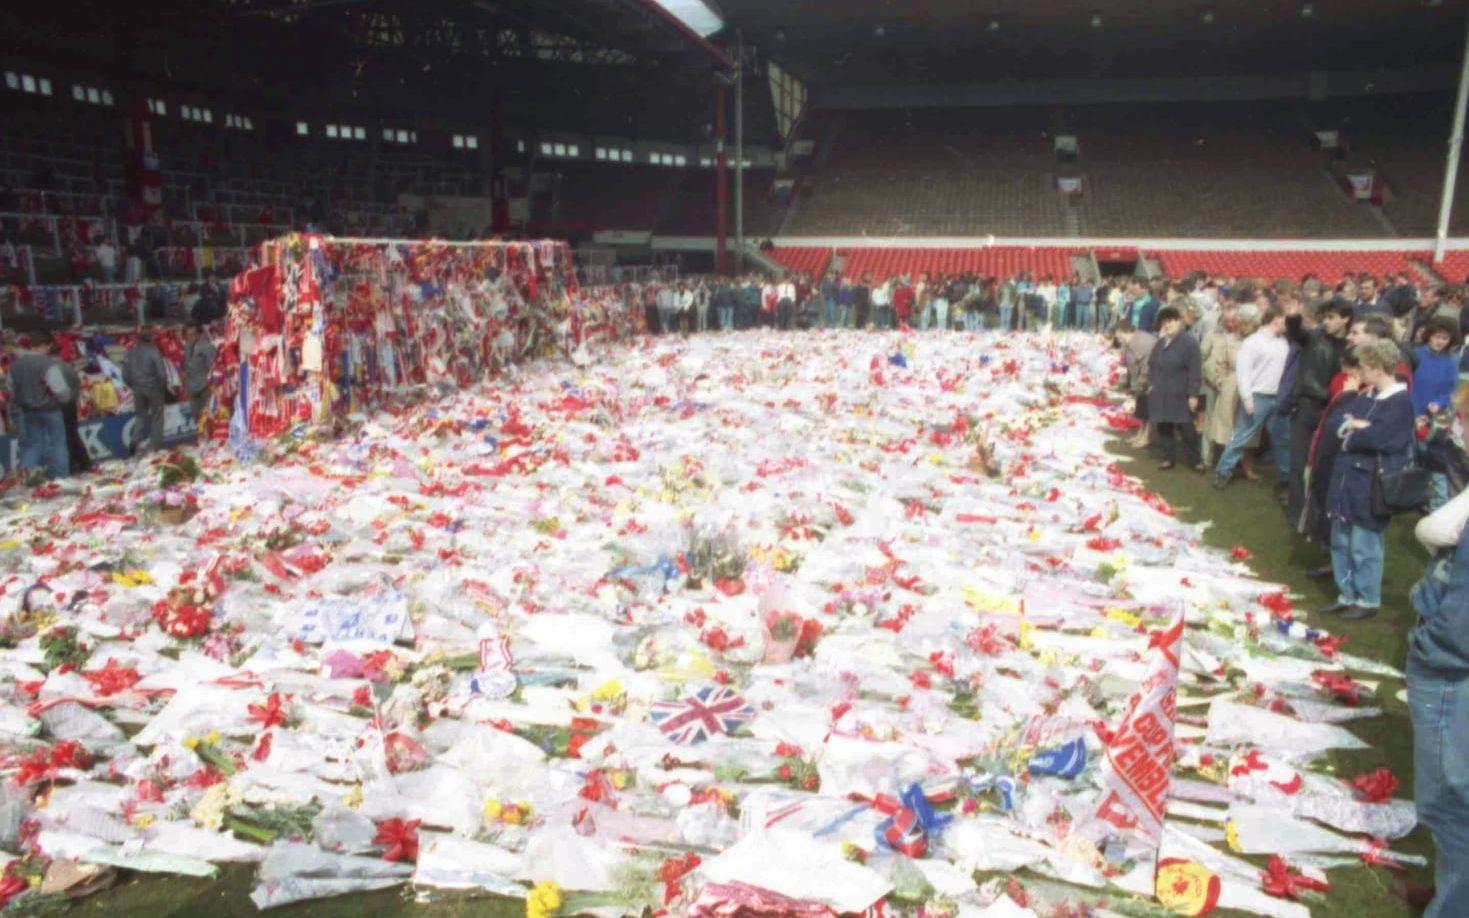 Förbudet för ståplatser infördes efter Hillsborough-olyckan då 96 Liverpool-supportrar miste livet på ståplatsläktaren. Foto: TT